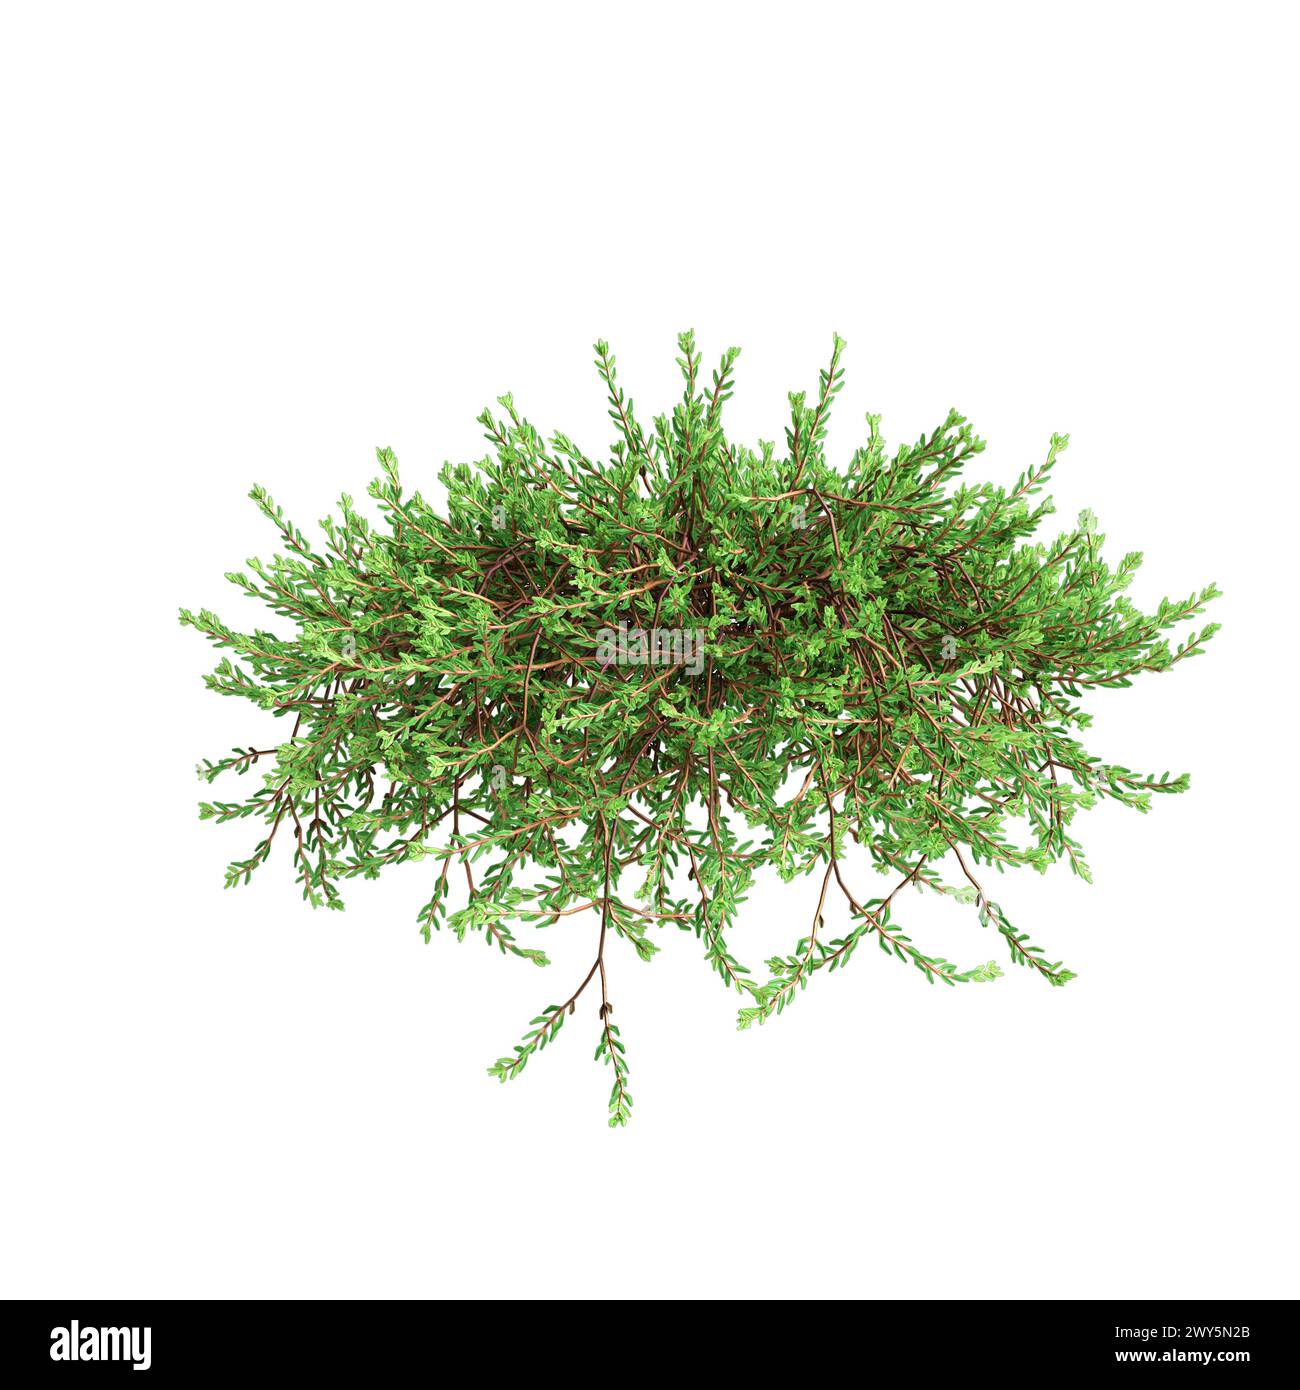 3d illustration of Empetrum nigrum hanging plant isolated on white background Stock Photo